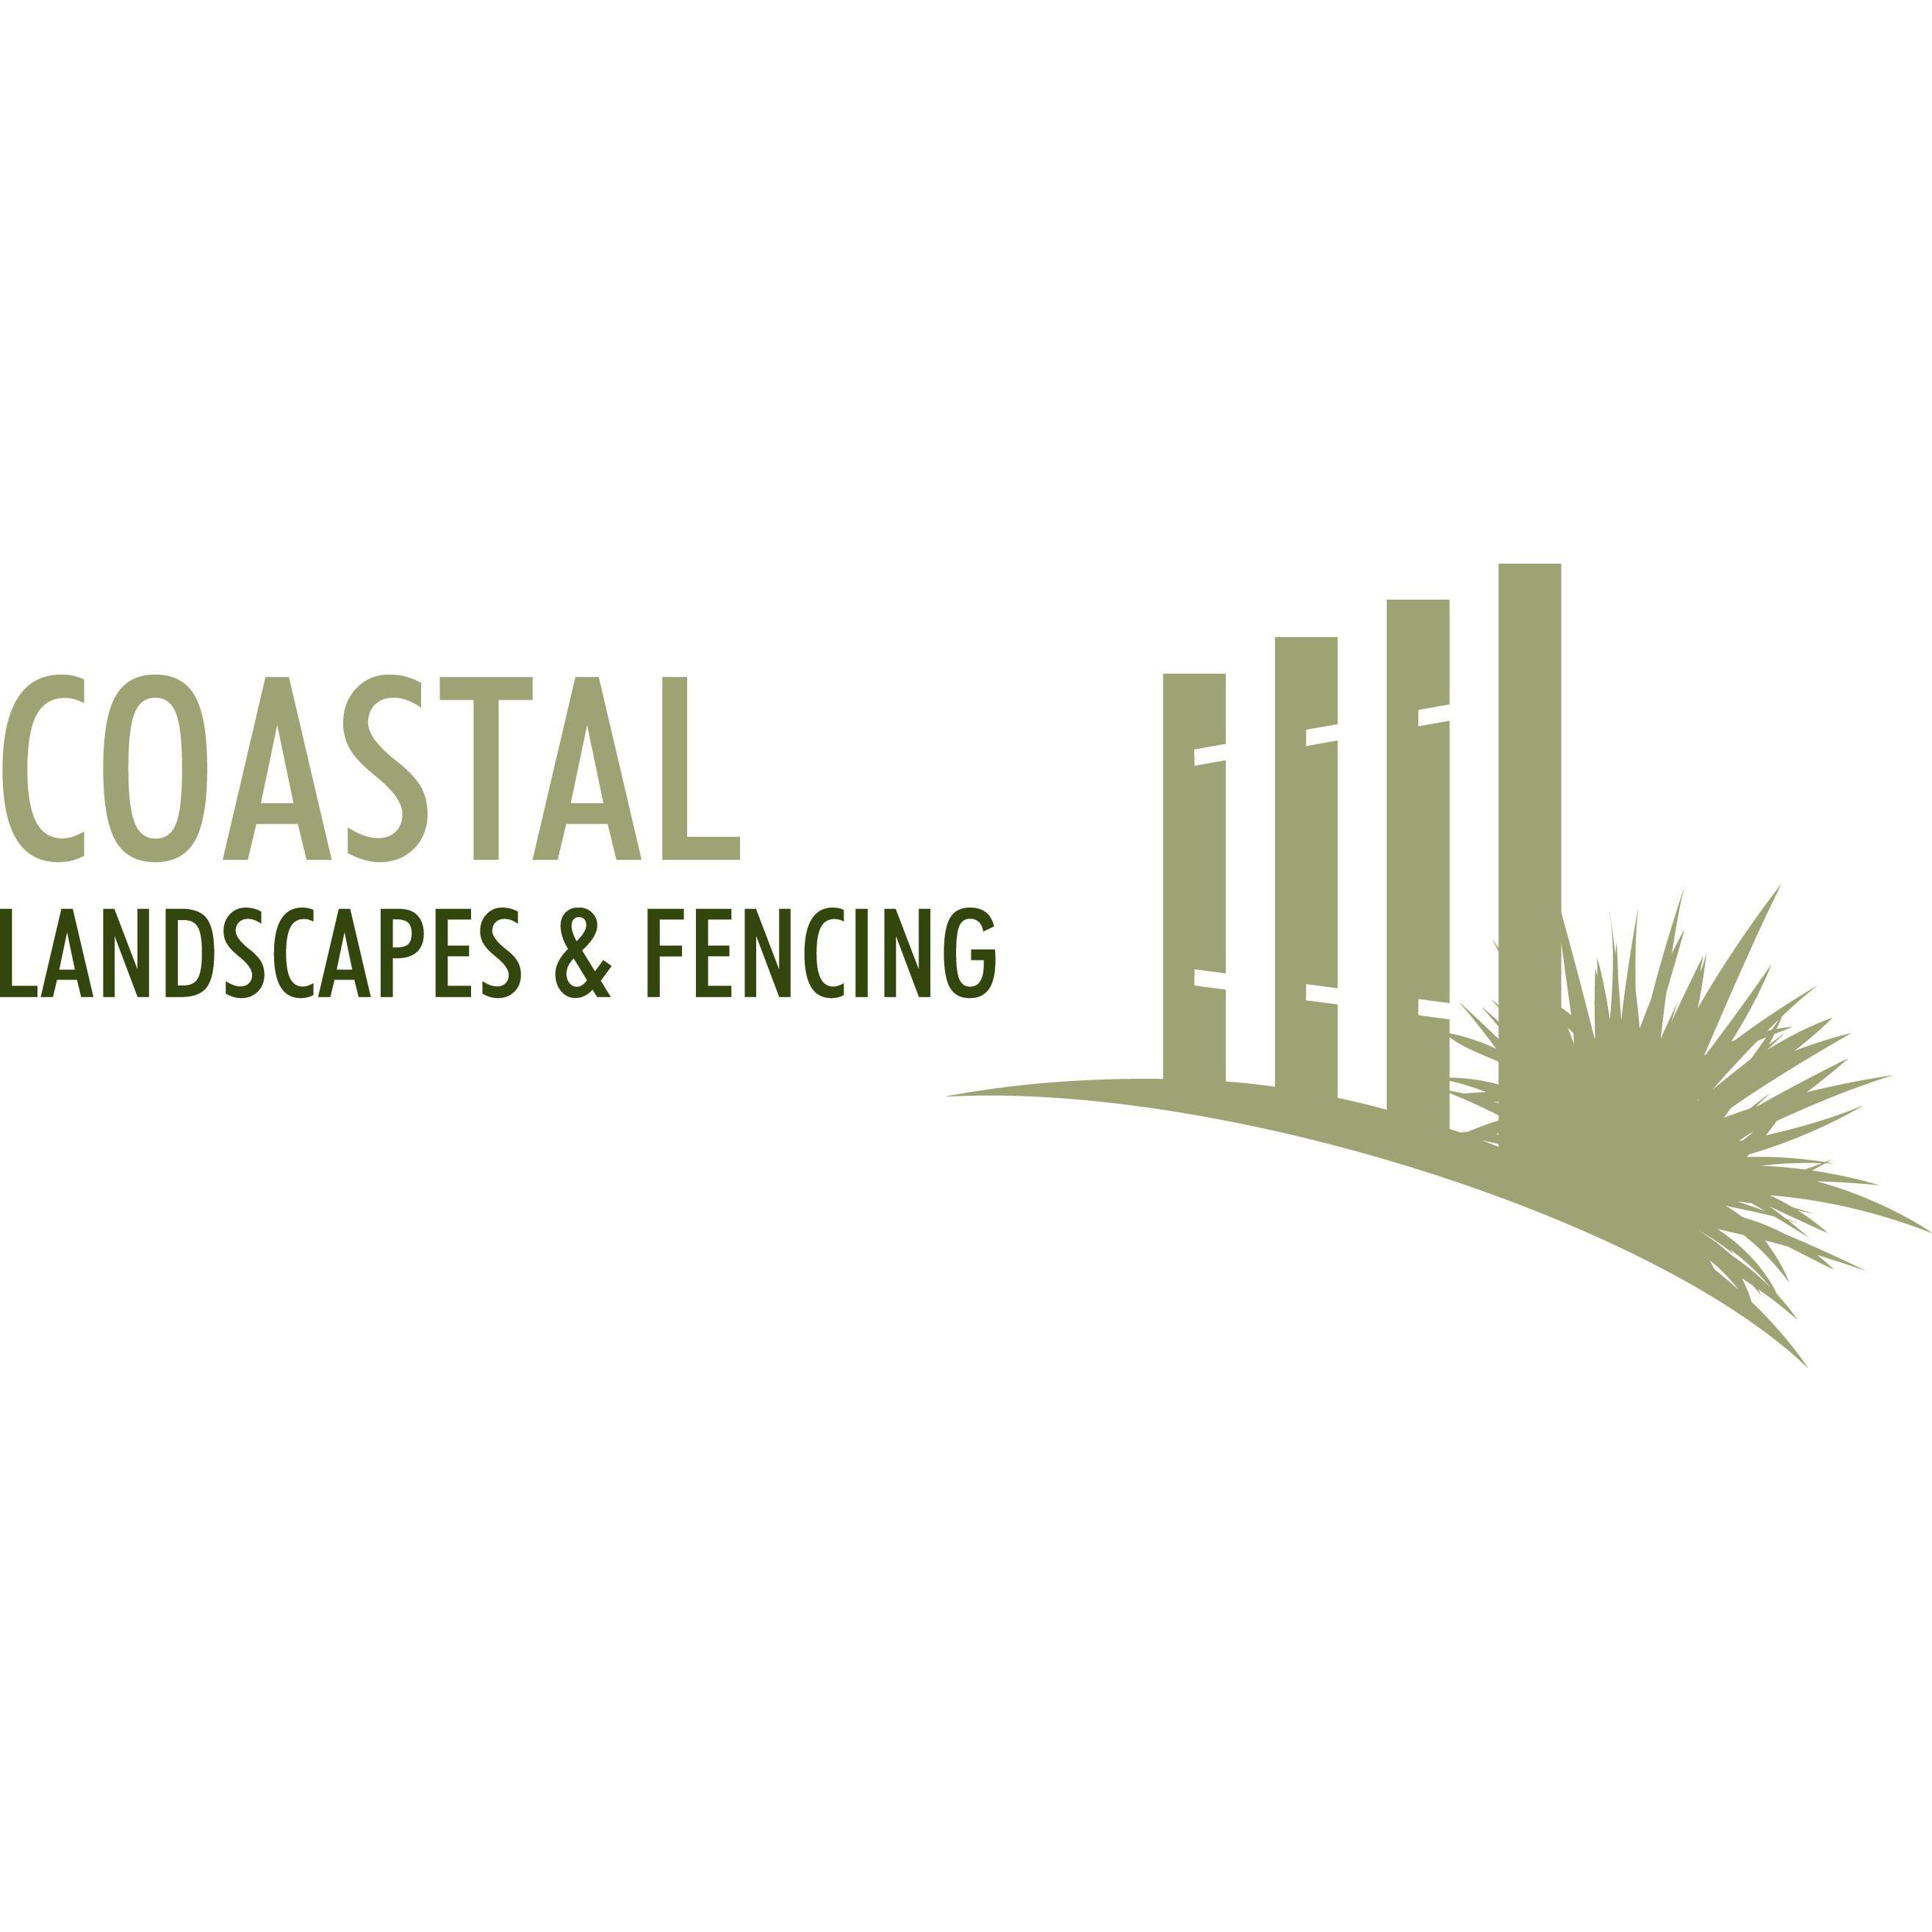 Coastal Landscapes & Fencing - Victor Harbor, SA 5211 - (08) 8552 3588 | ShowMeLocal.com